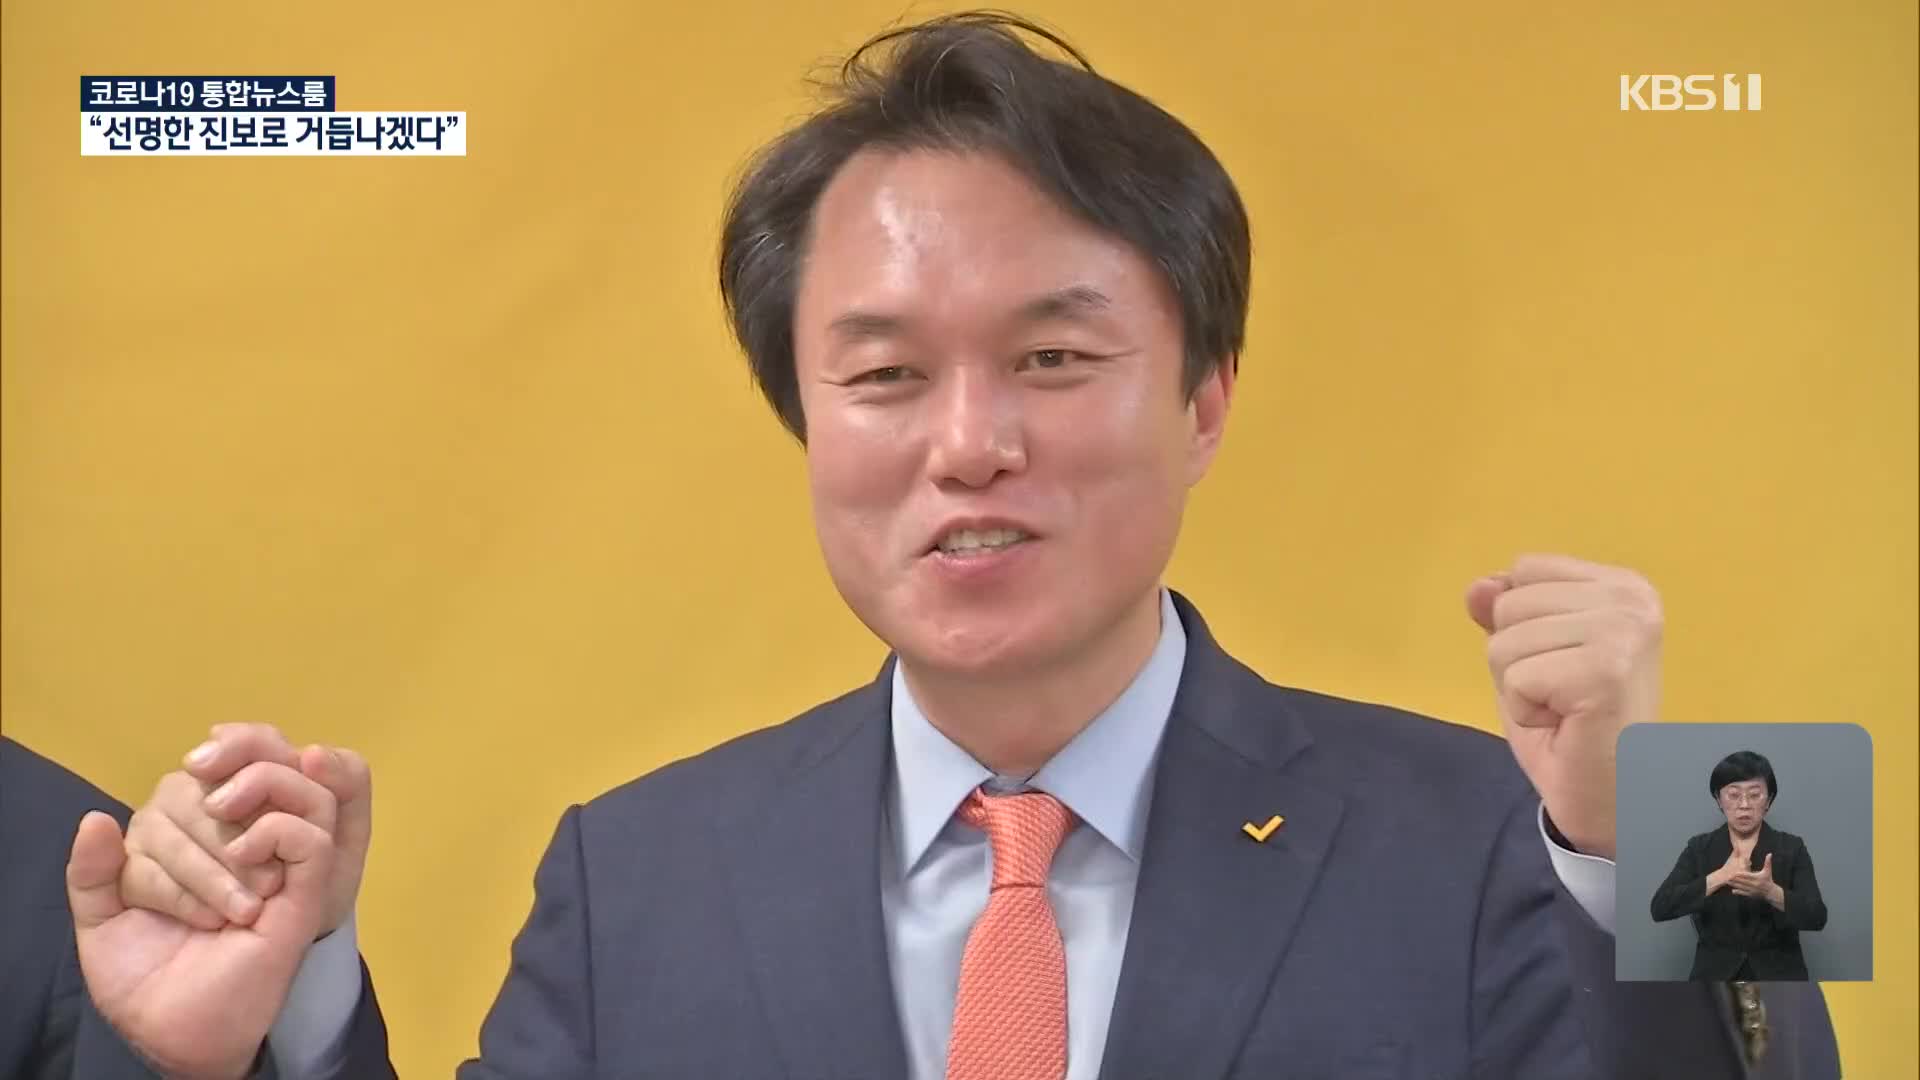 정의당 새 대표에 김종철…“선명한 진보로 거듭나겠다”